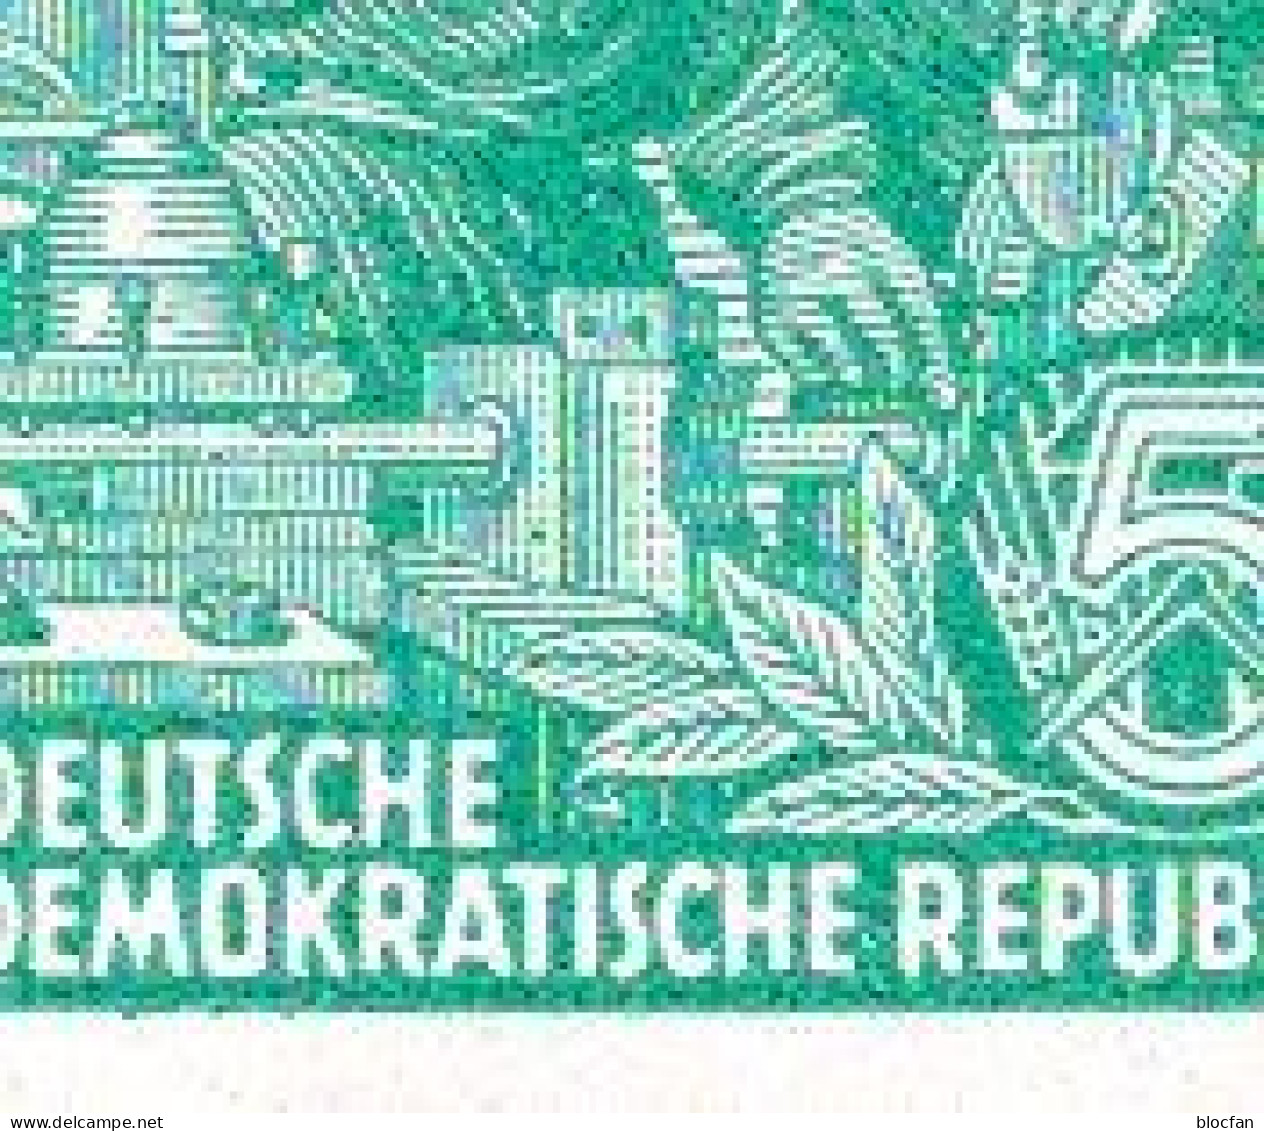 Freimarken FJPl. 1960 DDR 704A+ MHB 8 mit 3 PF ** 181€ Arbeiter an Werkbank für Marken-Hefte sheets sheetlet bf Germany